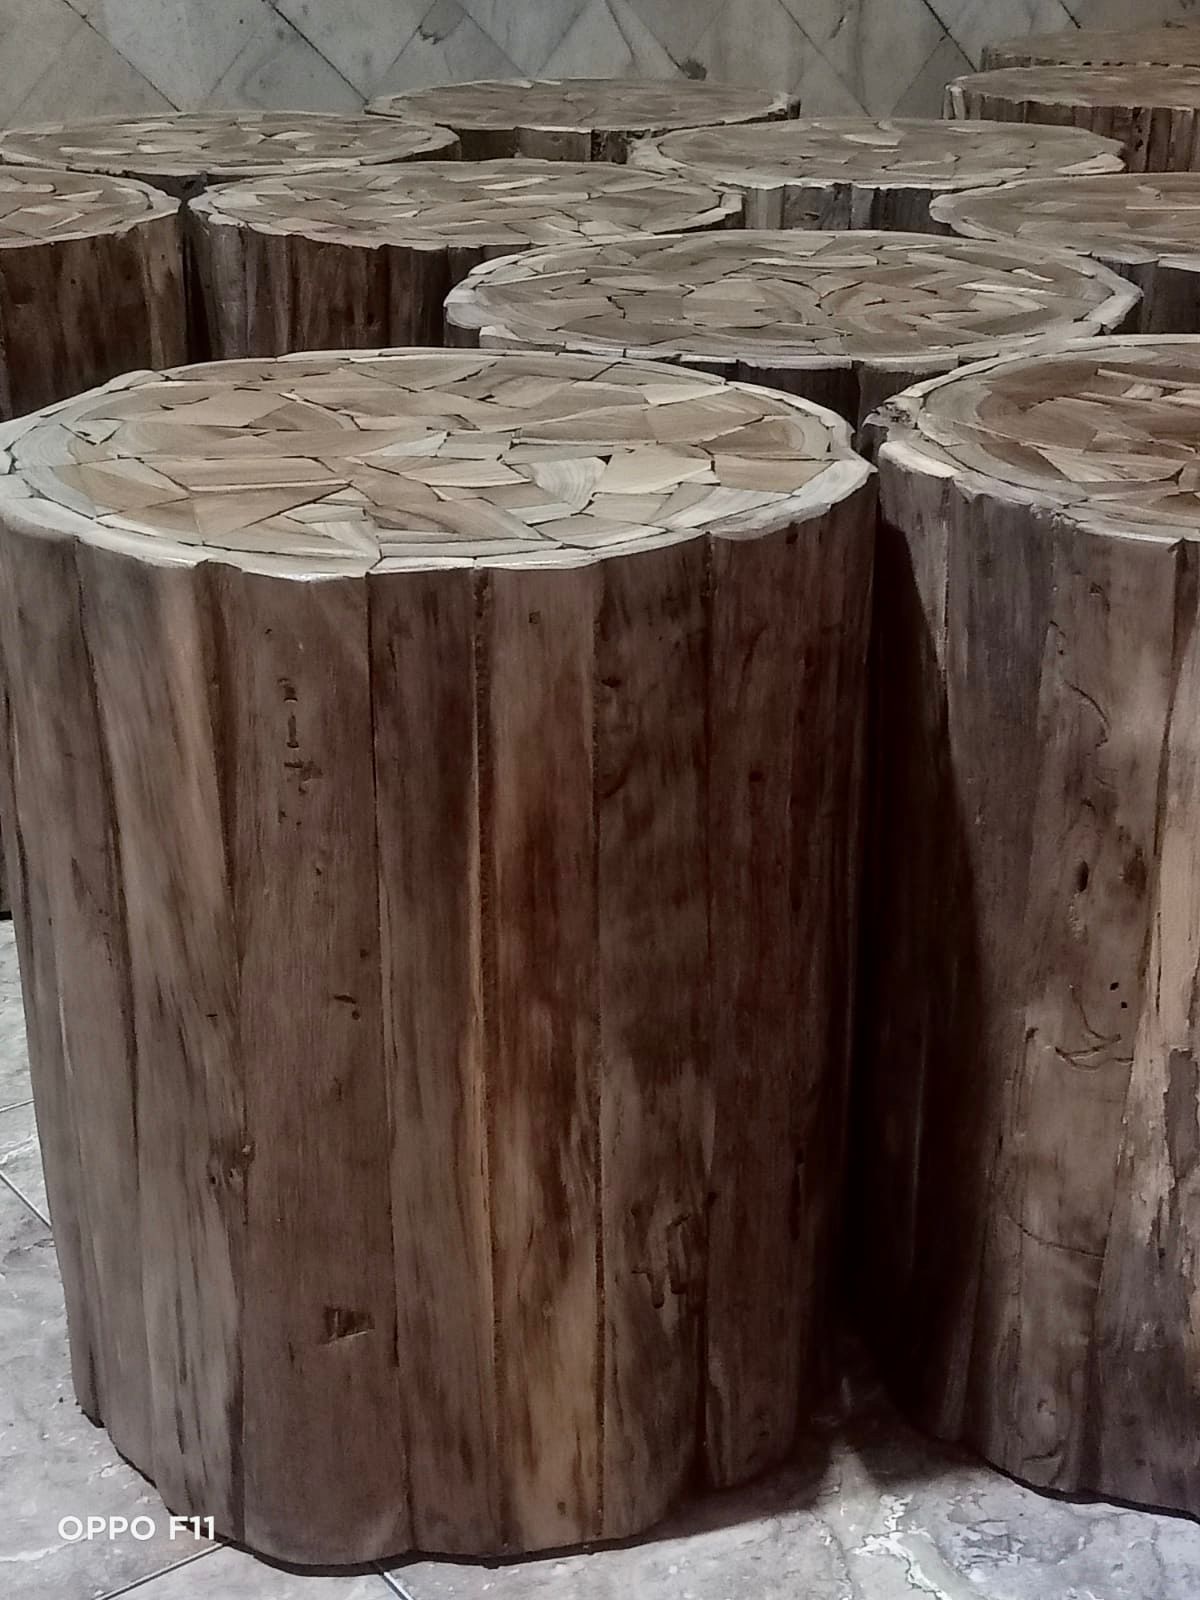 שולחן צד מעץ